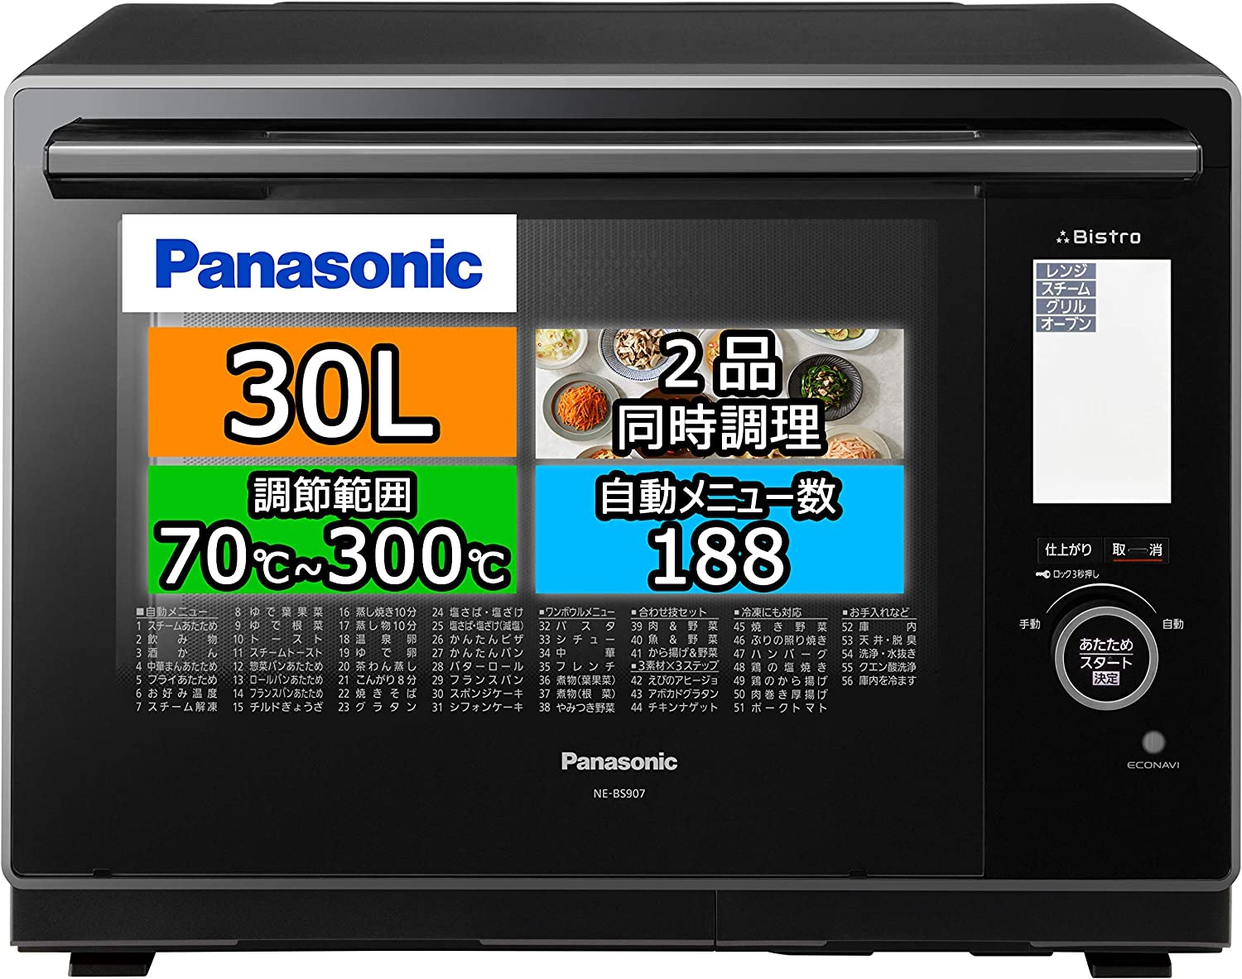 Panasonic(パナソニック) ビストロ スチームオーブンレンジ  NE-BS907の商品画像サムネ1 